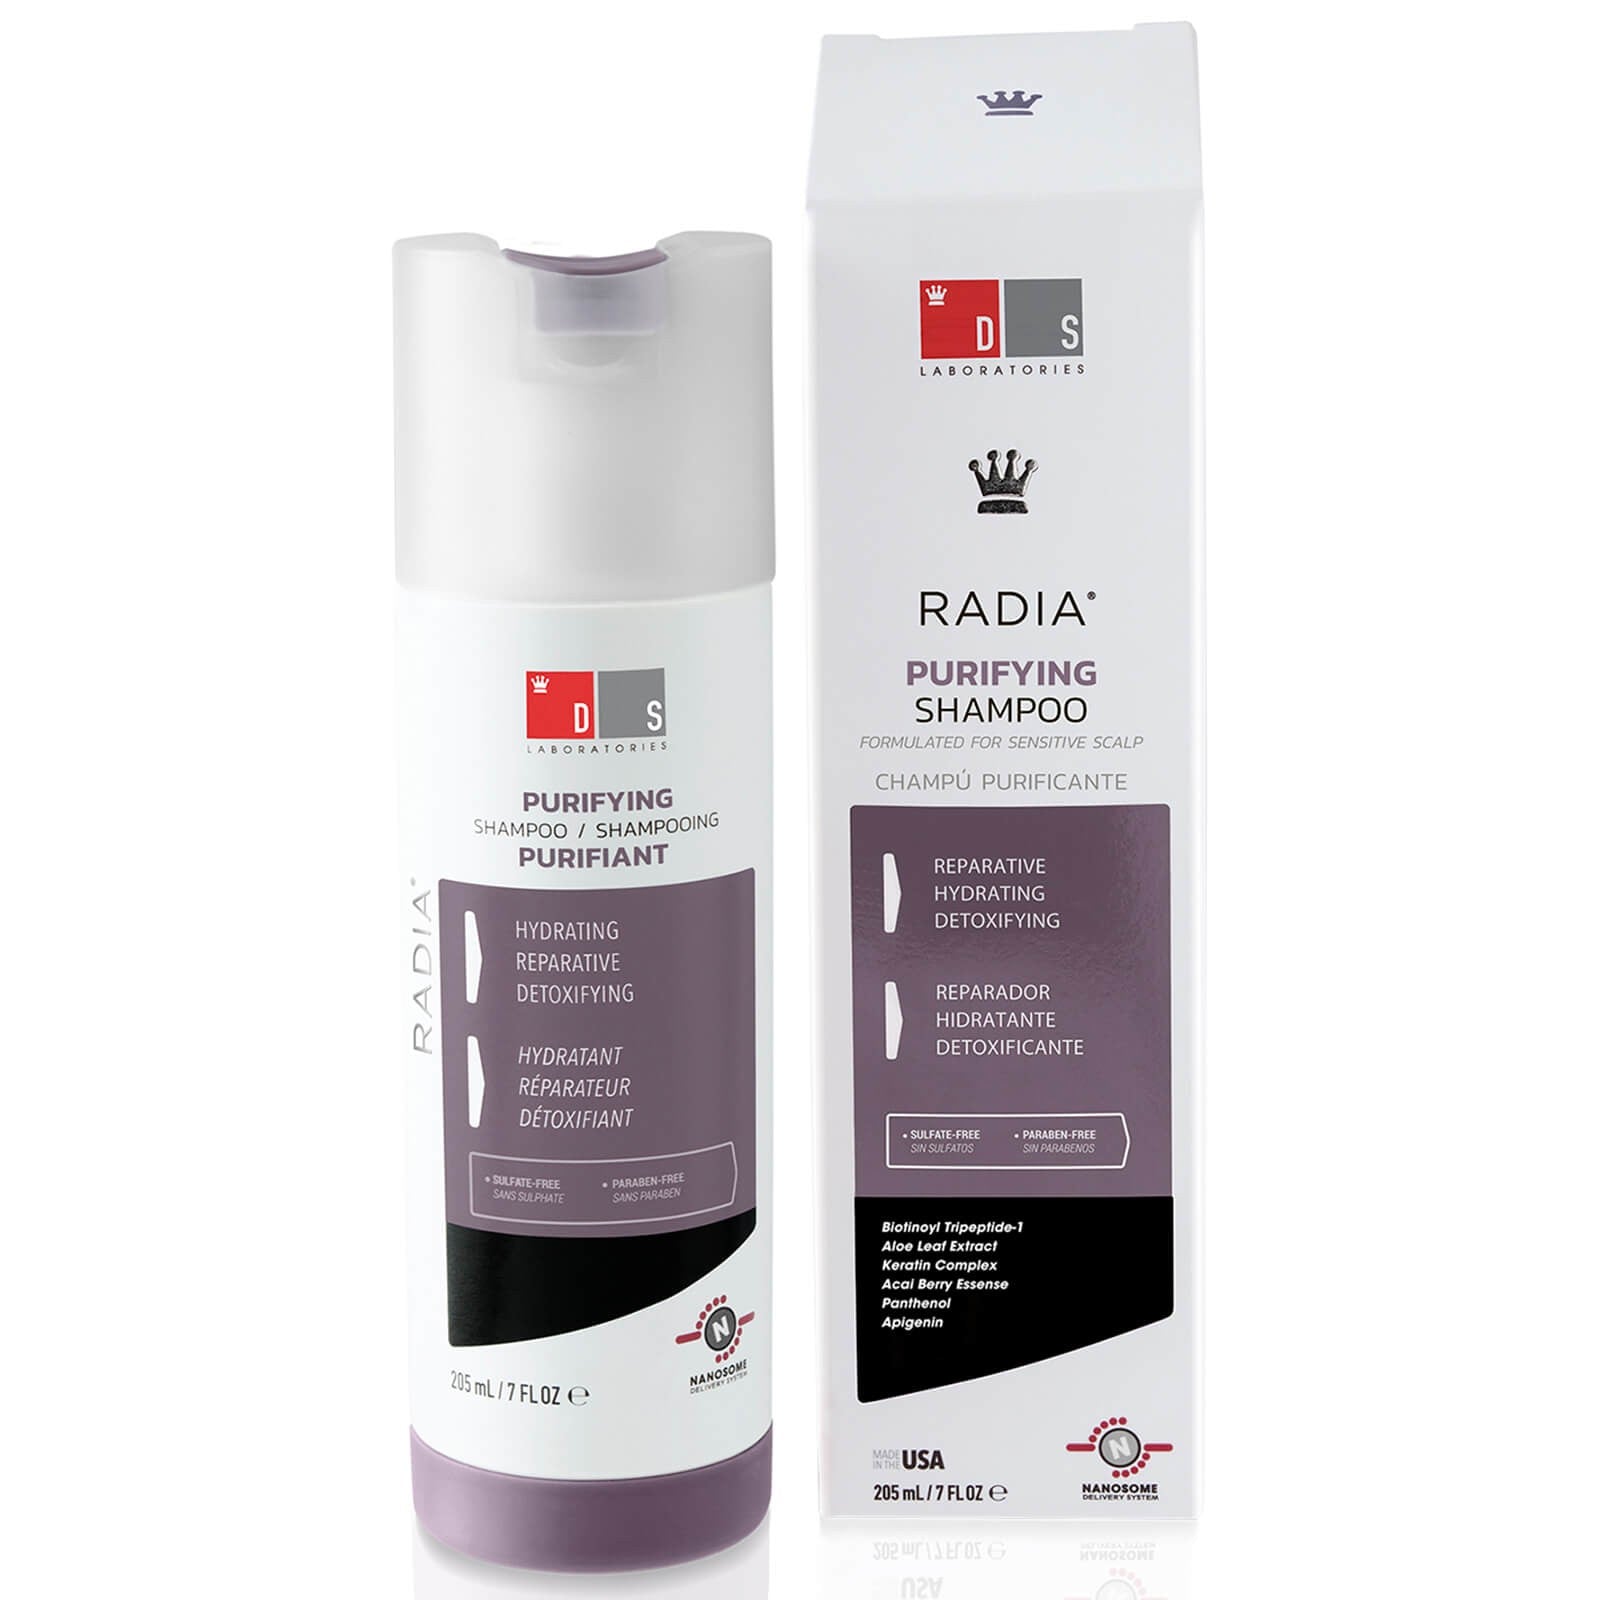 DS Laboratories Radia Kit Trattamento Purificante freeshipping - capellissimo.com